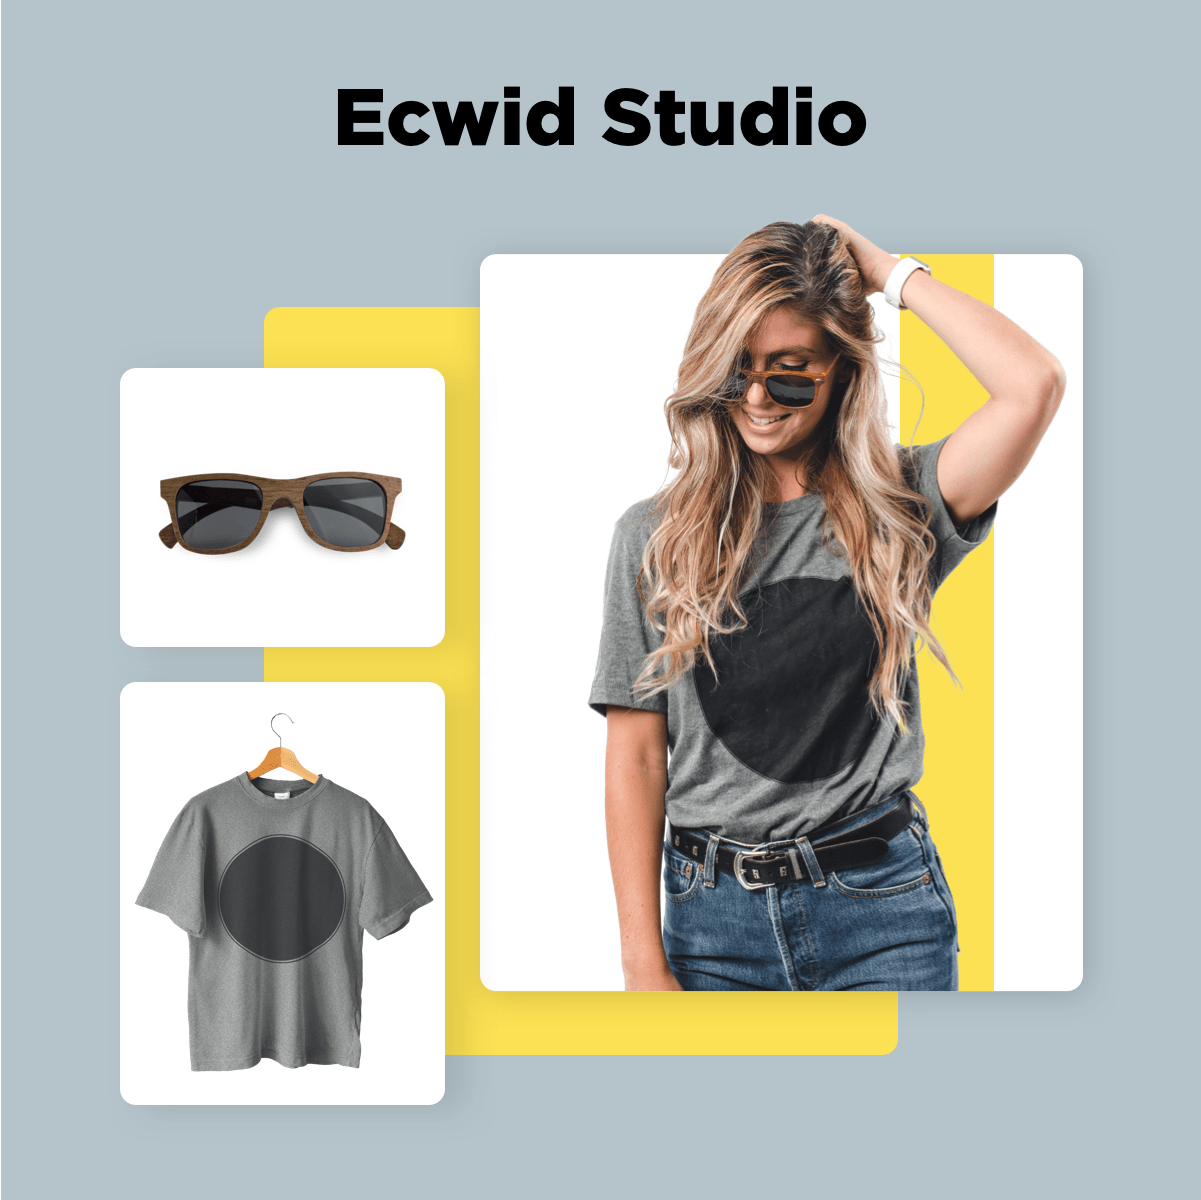 ecwid studio